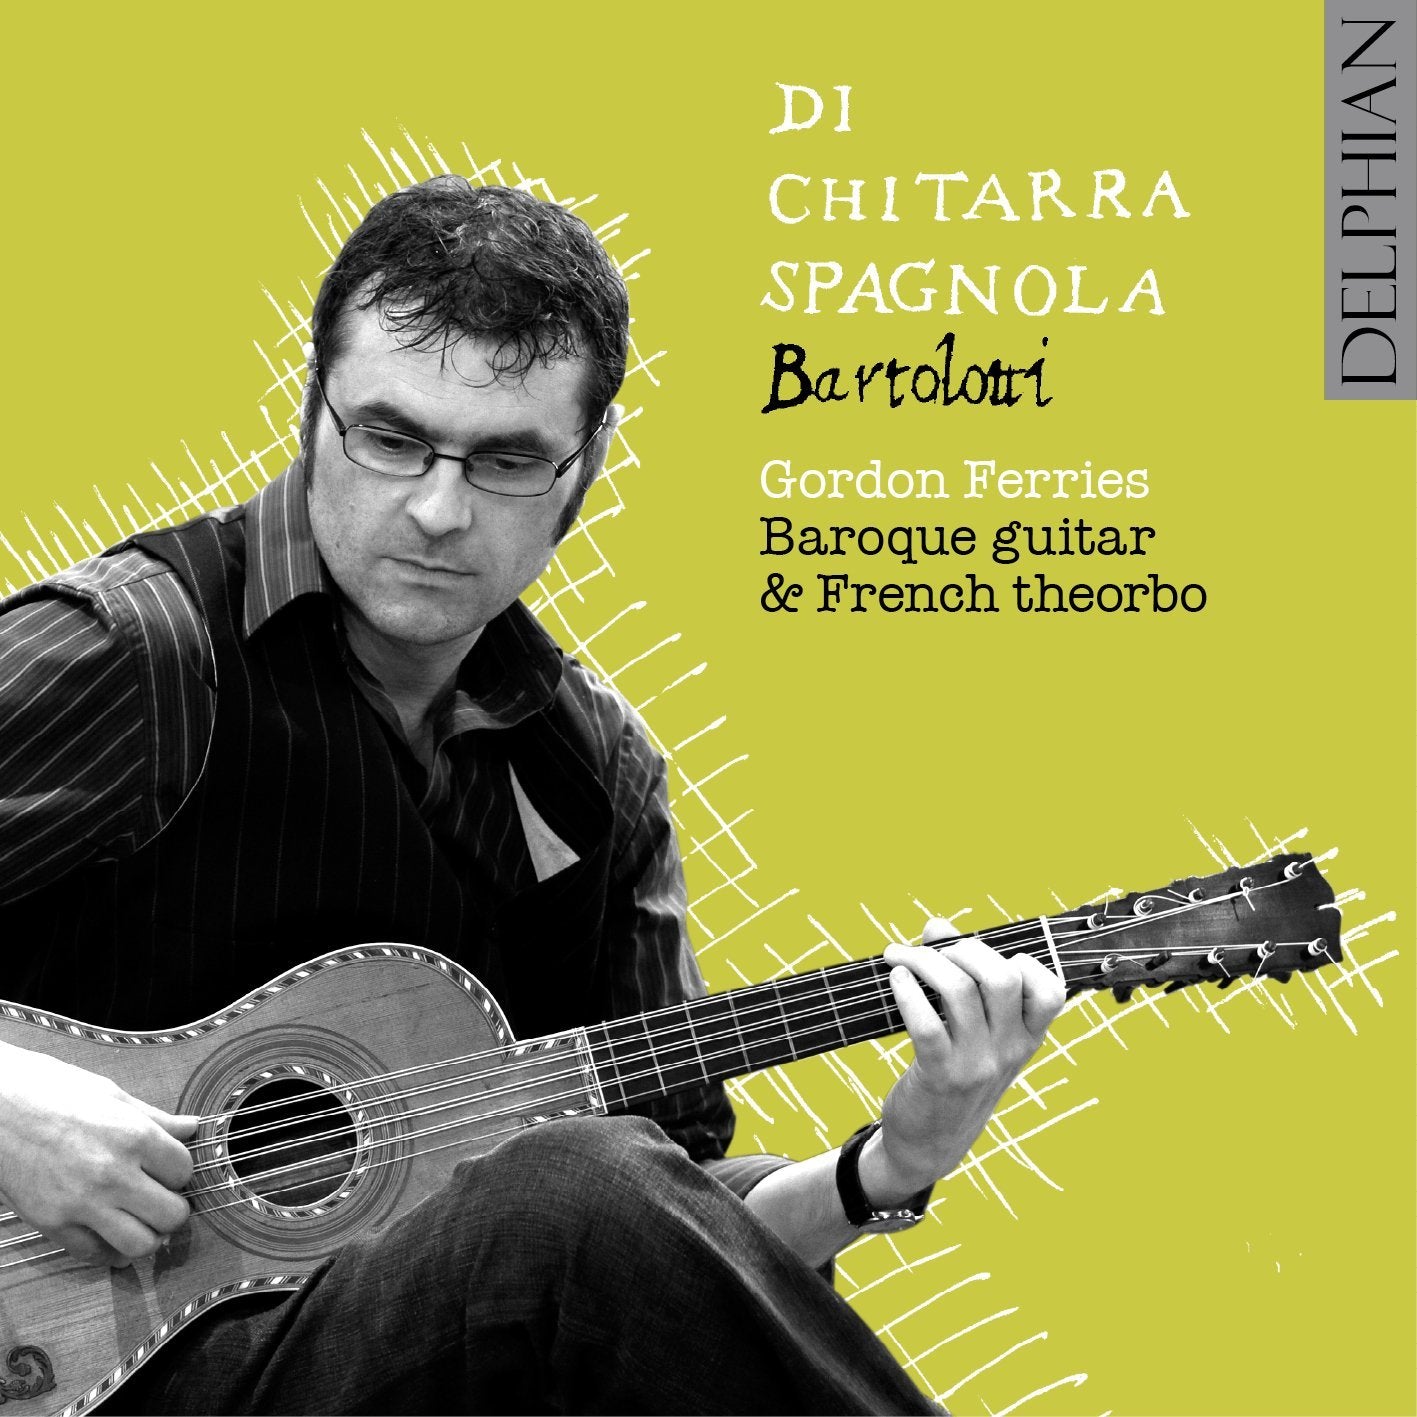 Bartolotti: Di Chitarra Spagnola CD Delphian Records